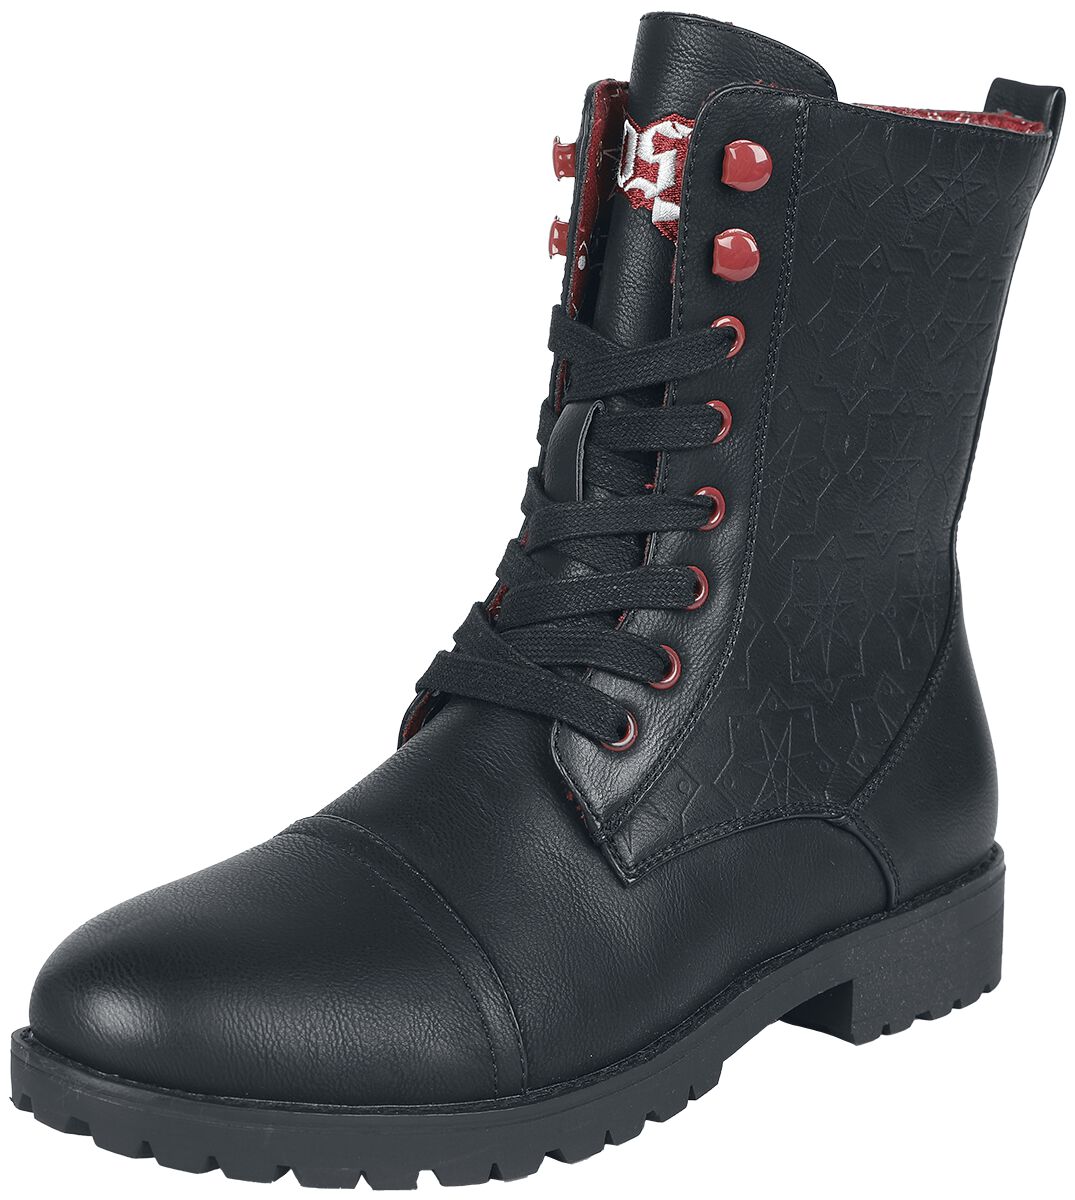 Ghost Boot - EMP Signature Collection - EU37 bis EU42 - für Damen - Größe EU37 - schwarz  - EMP exklusives Merchandise!